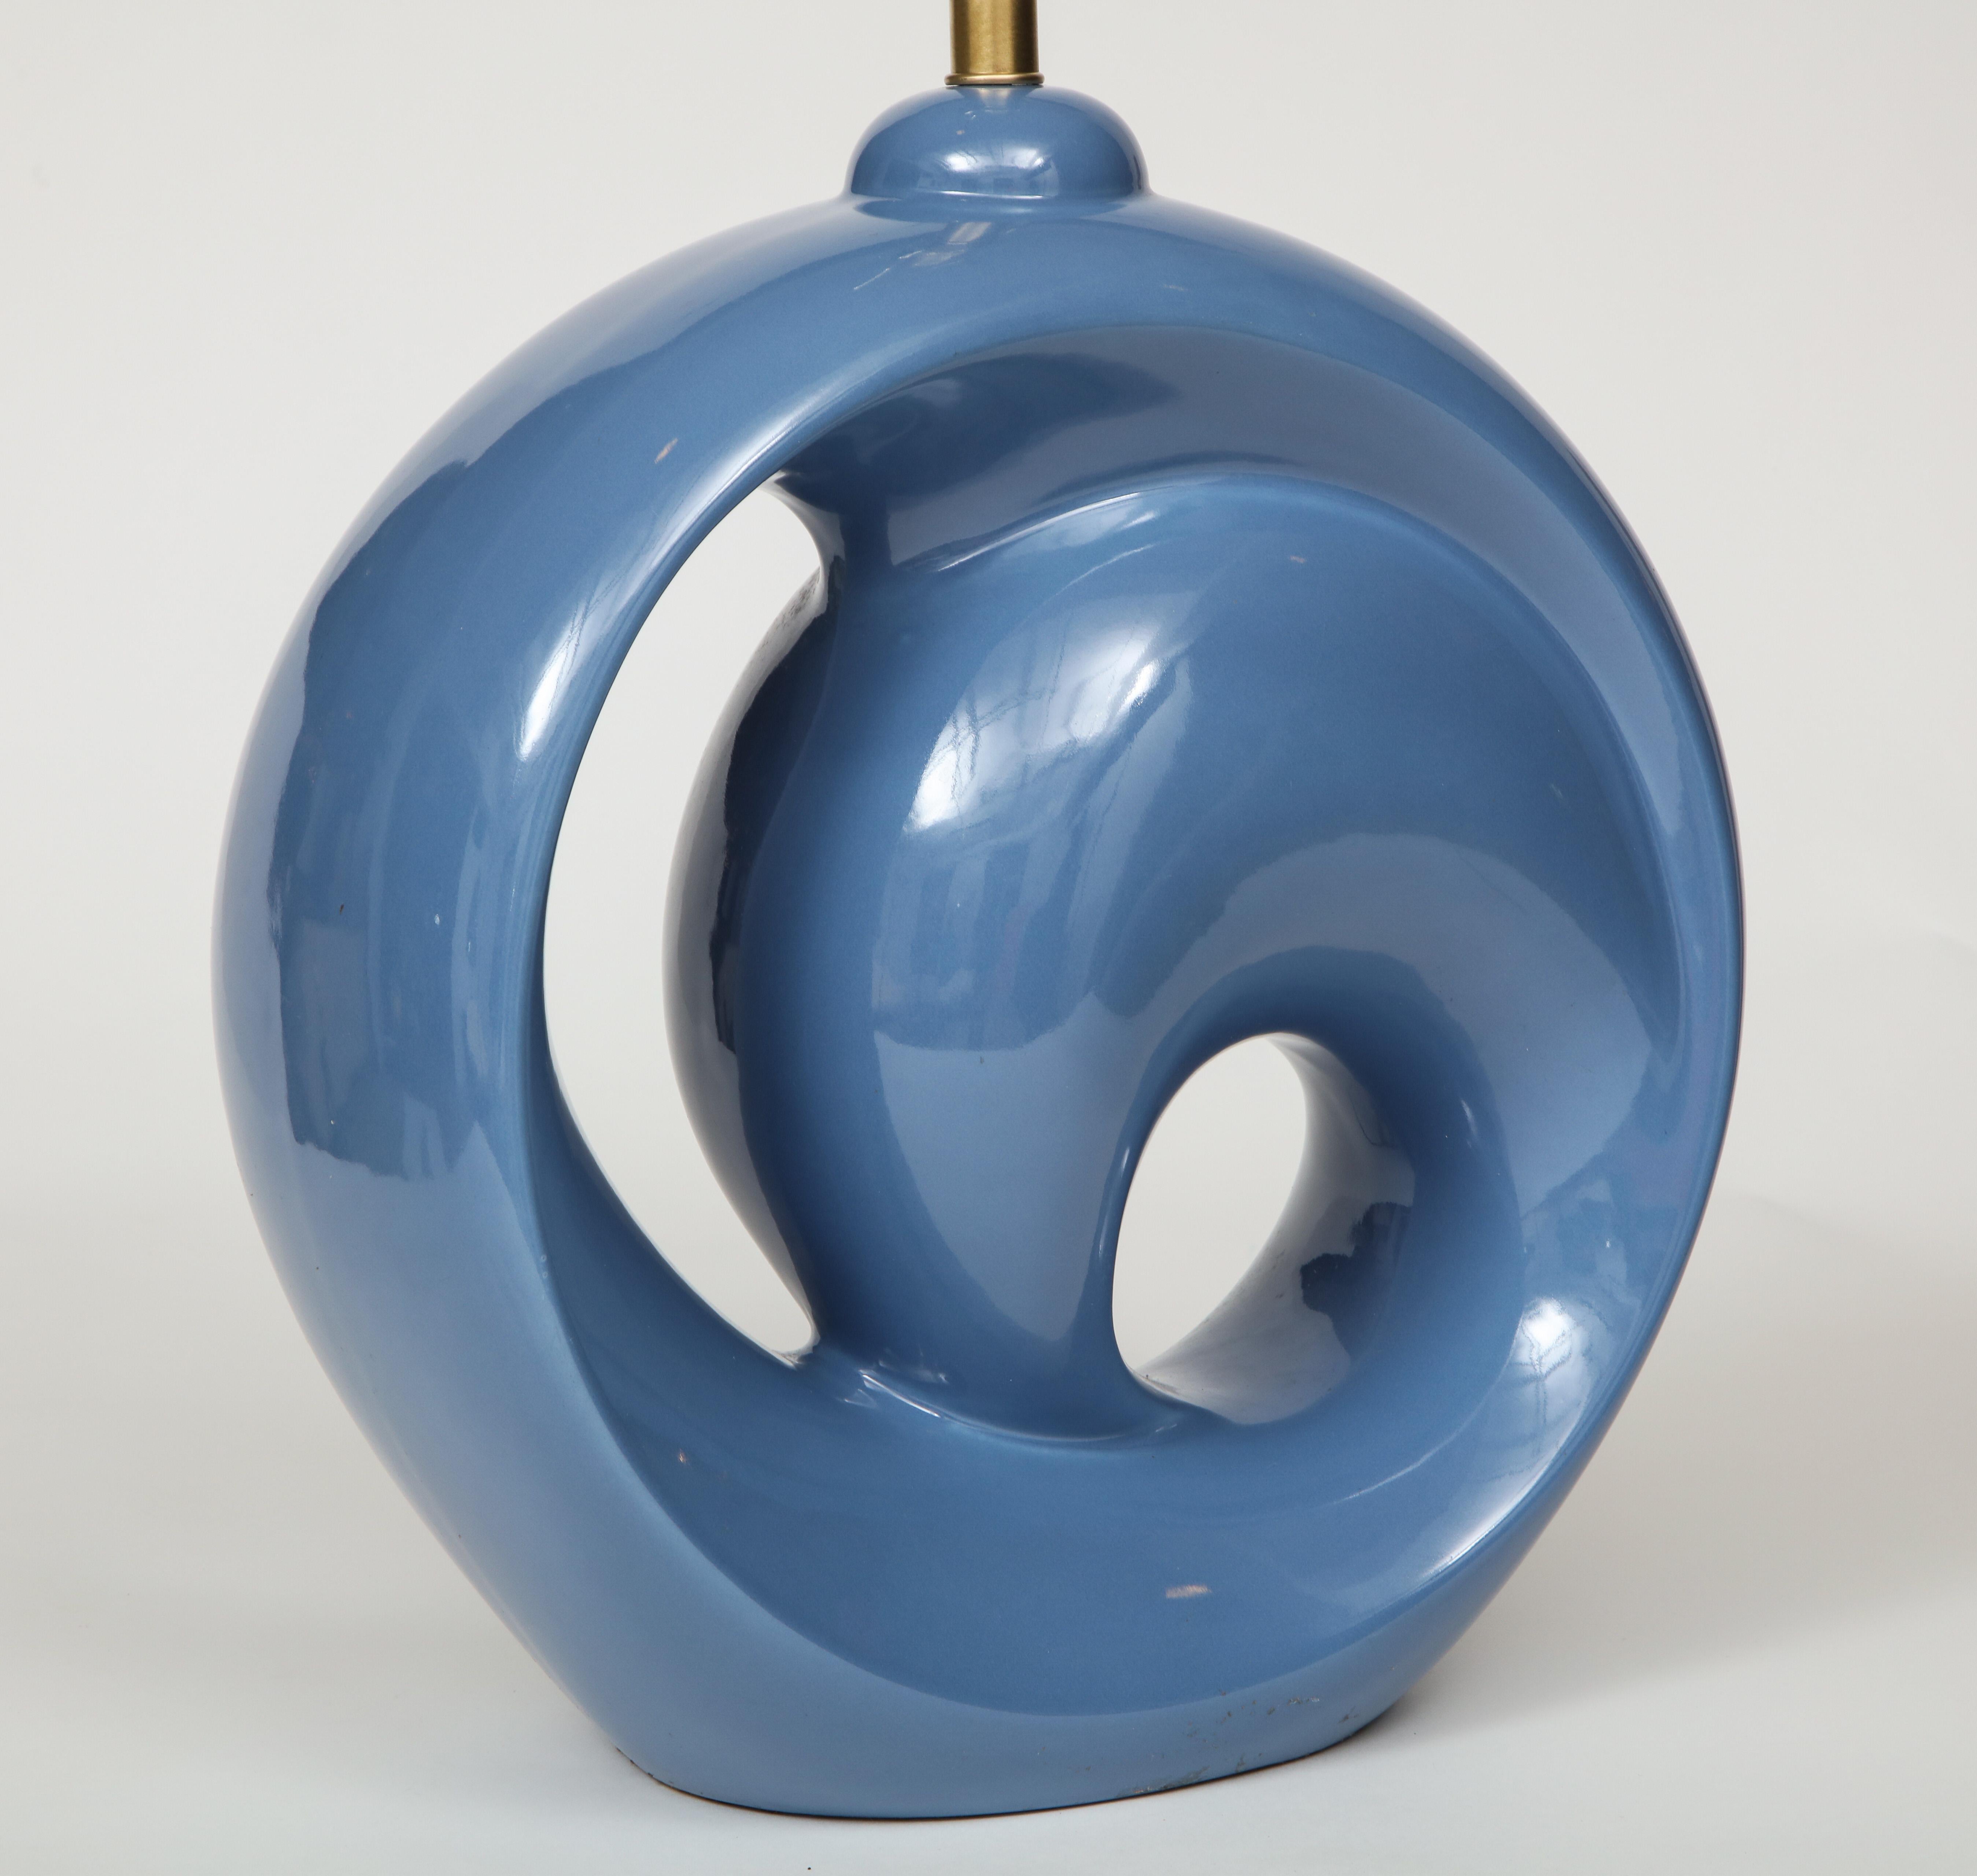 20th Century Midcentury Cornflower Blue Porcelain Lamps For Sale